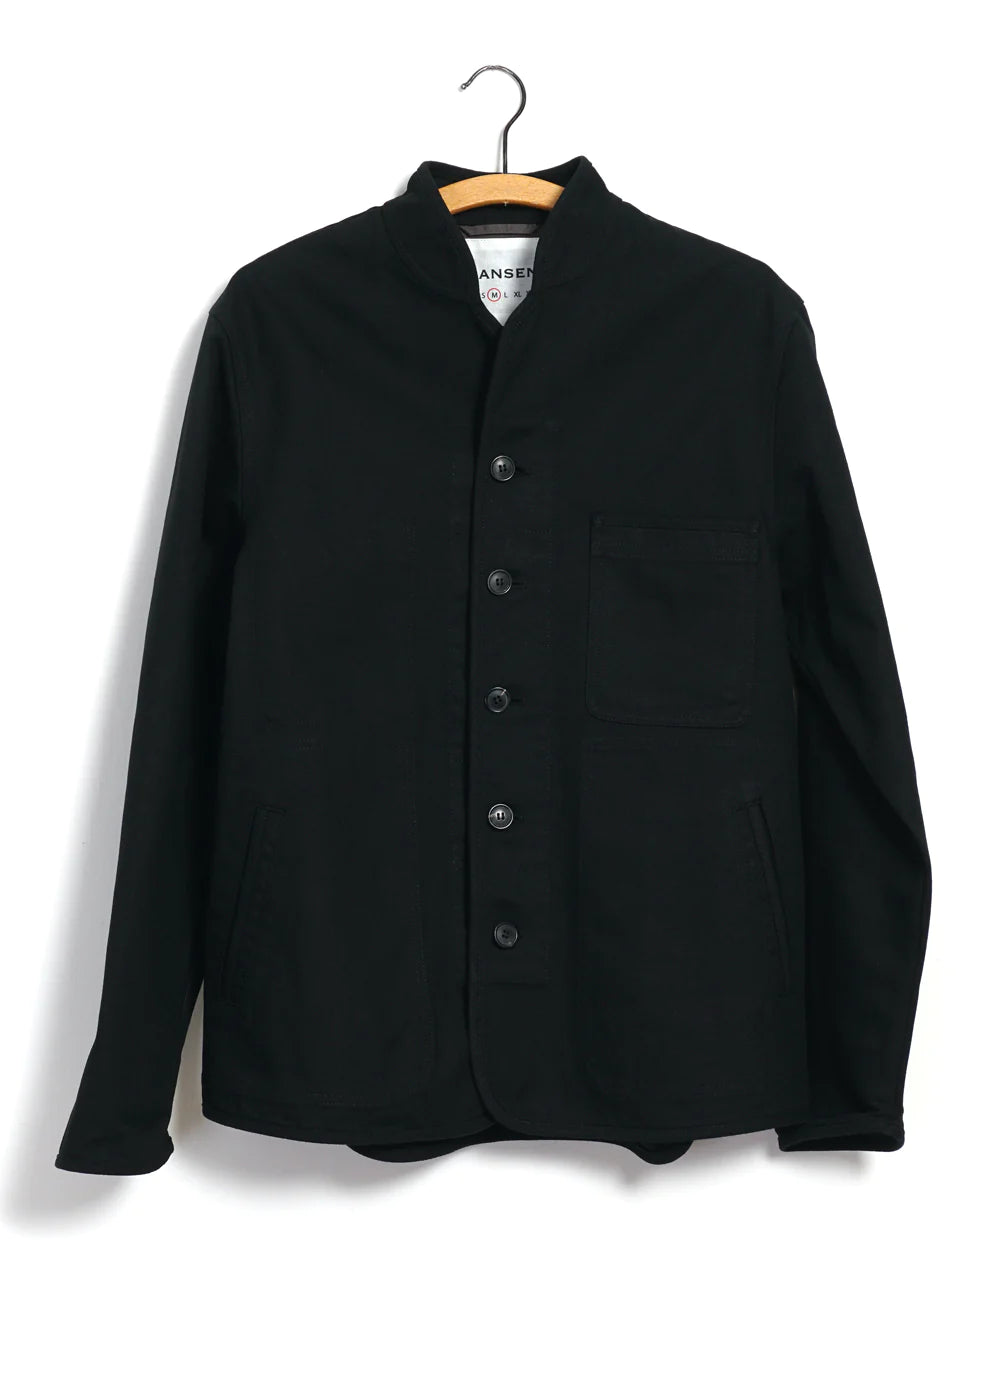 Hansen Garments Erling Canvas Work Jacket in black